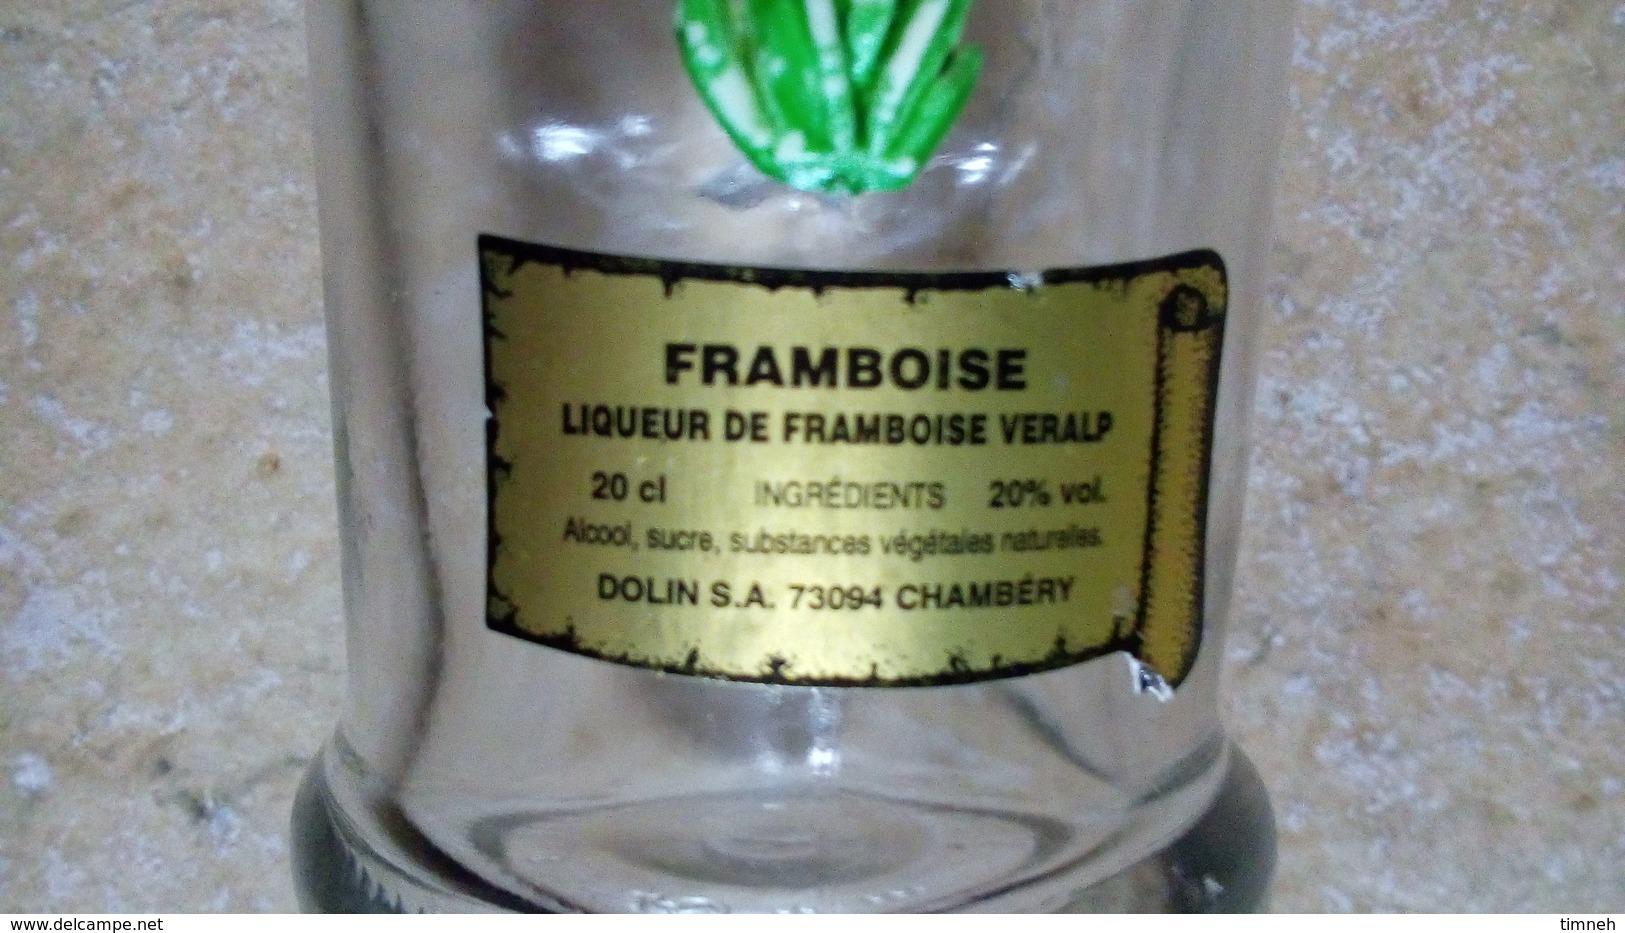 LIQUEUR FRAMBOISE VERALP - PETITE (20cl) BOUTEILLE VERRE - FLEUR GENTIANE Deco Plastique -DOLIN CHAMBERY - Spiritueux